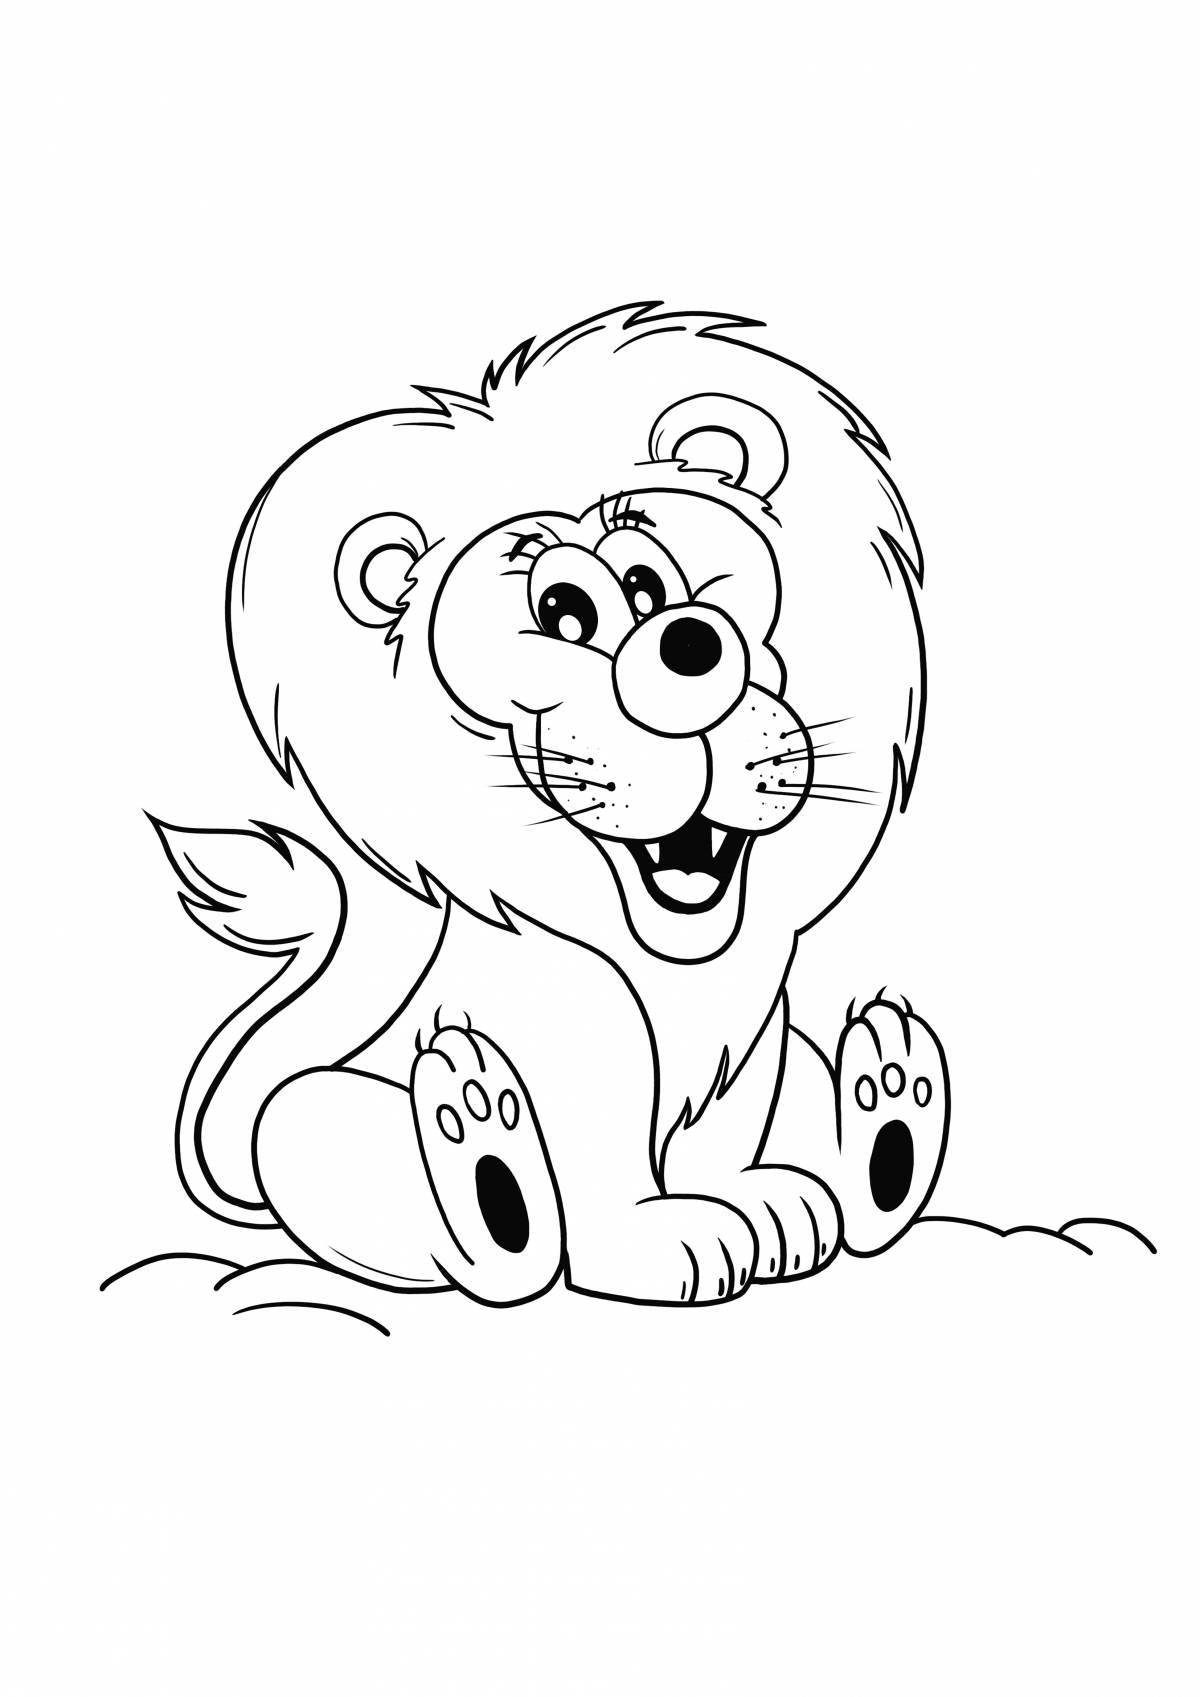 Яркая раскраска льва для детей 3-4 лет